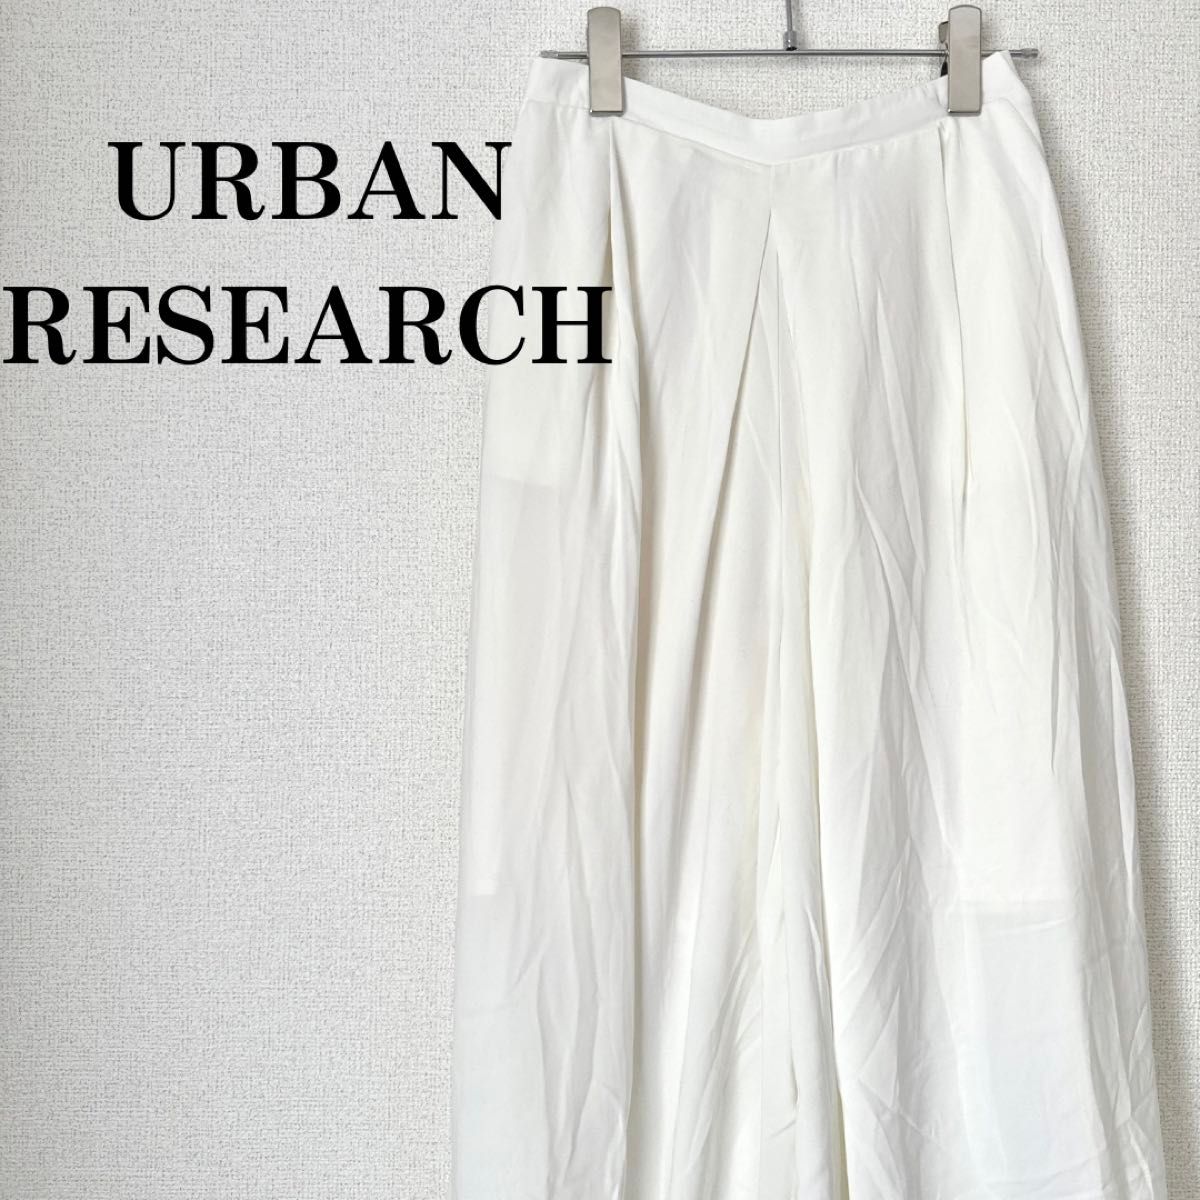 【URBAN RESEARCH】アーバンリサーチ ワイドパンツ サイズF ガウチョ スカーチョ タック ホワイト 春夏